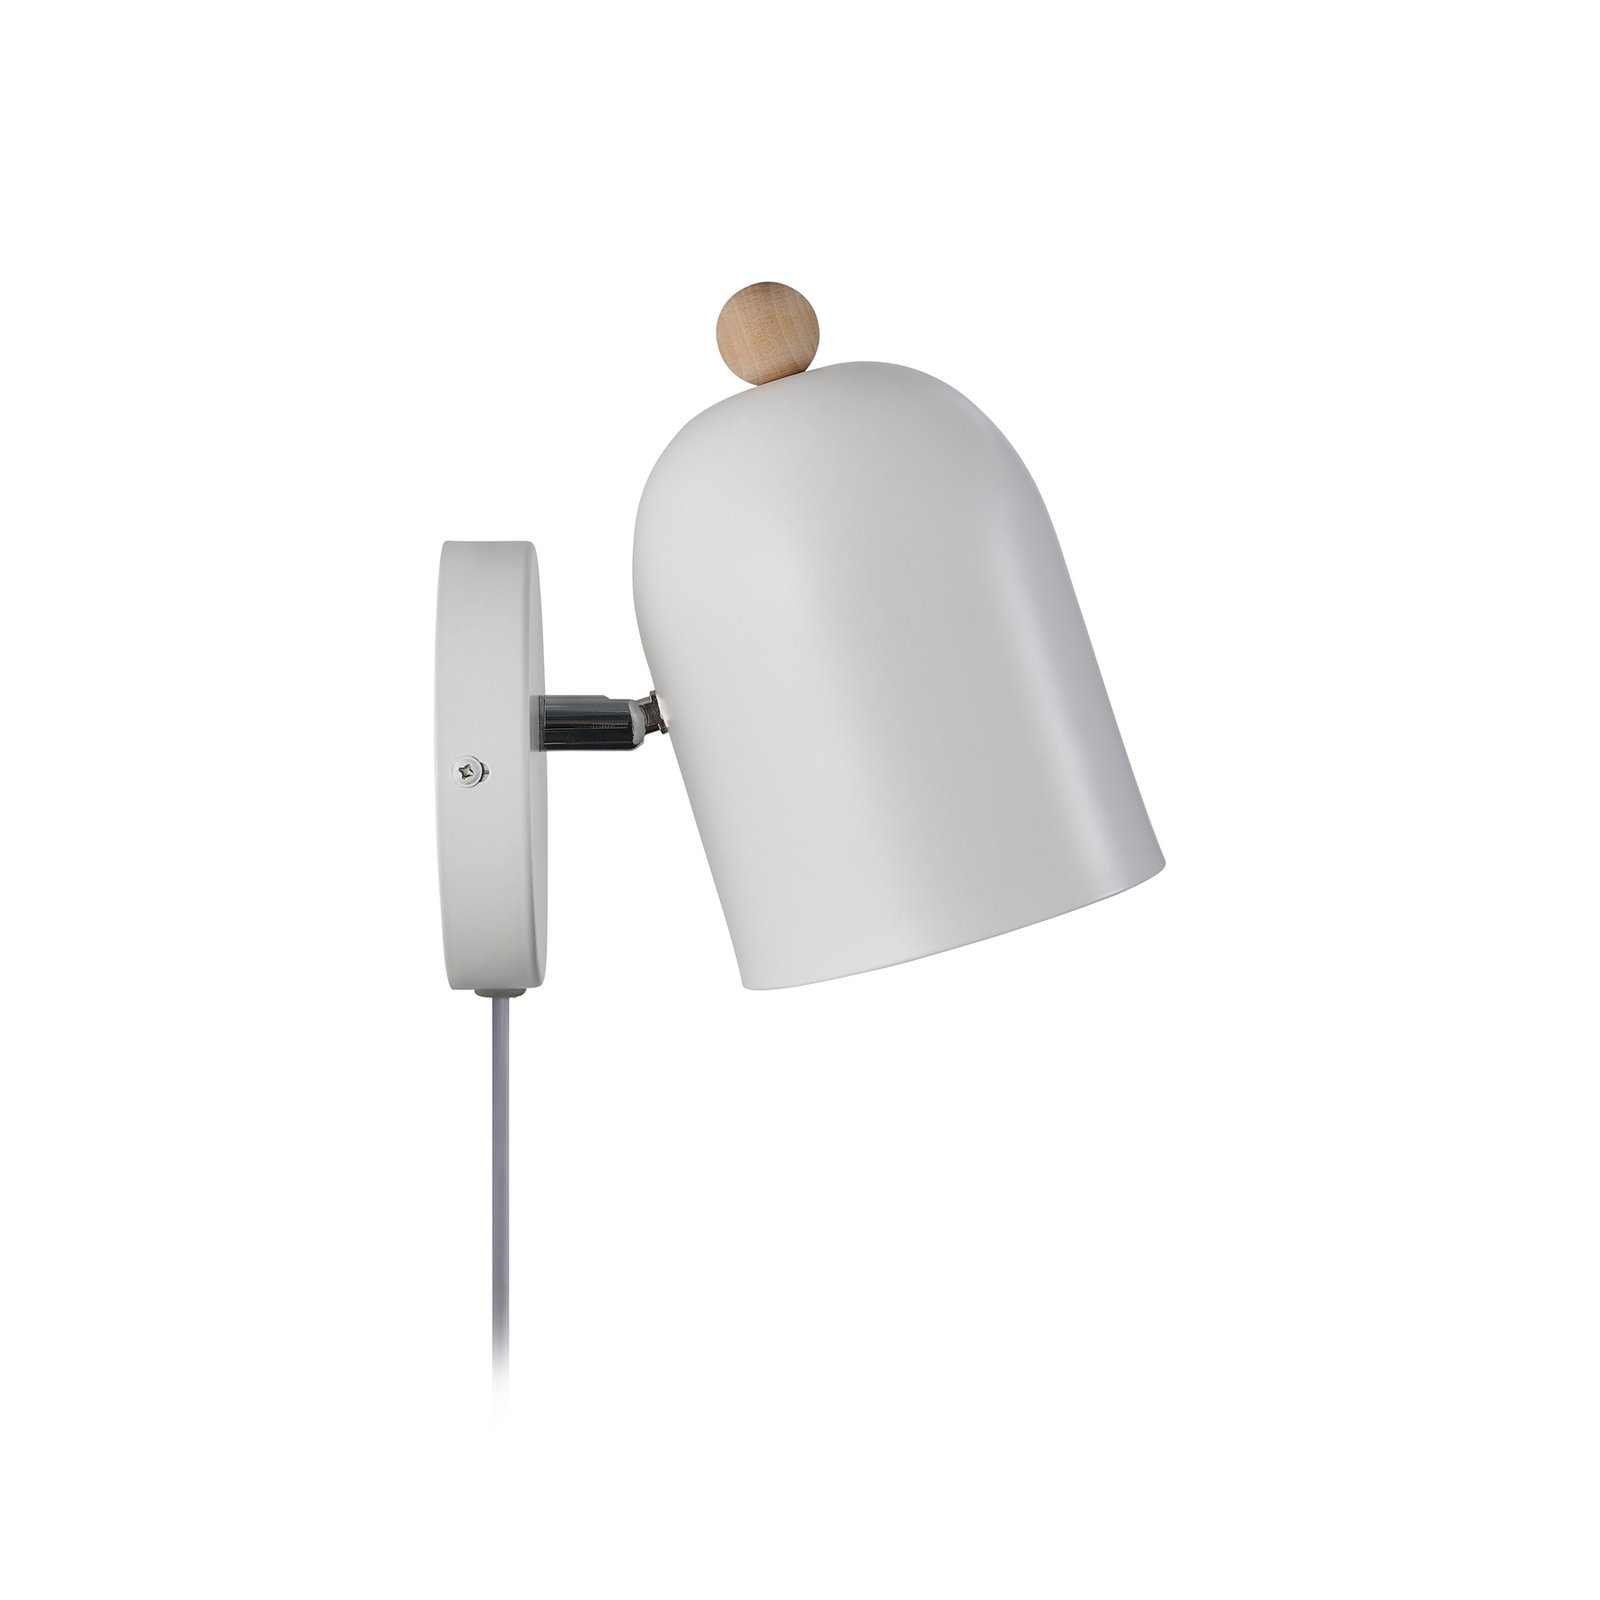 Gaston zidna svjetiljka s kablom i utikačem, metalna, bijela